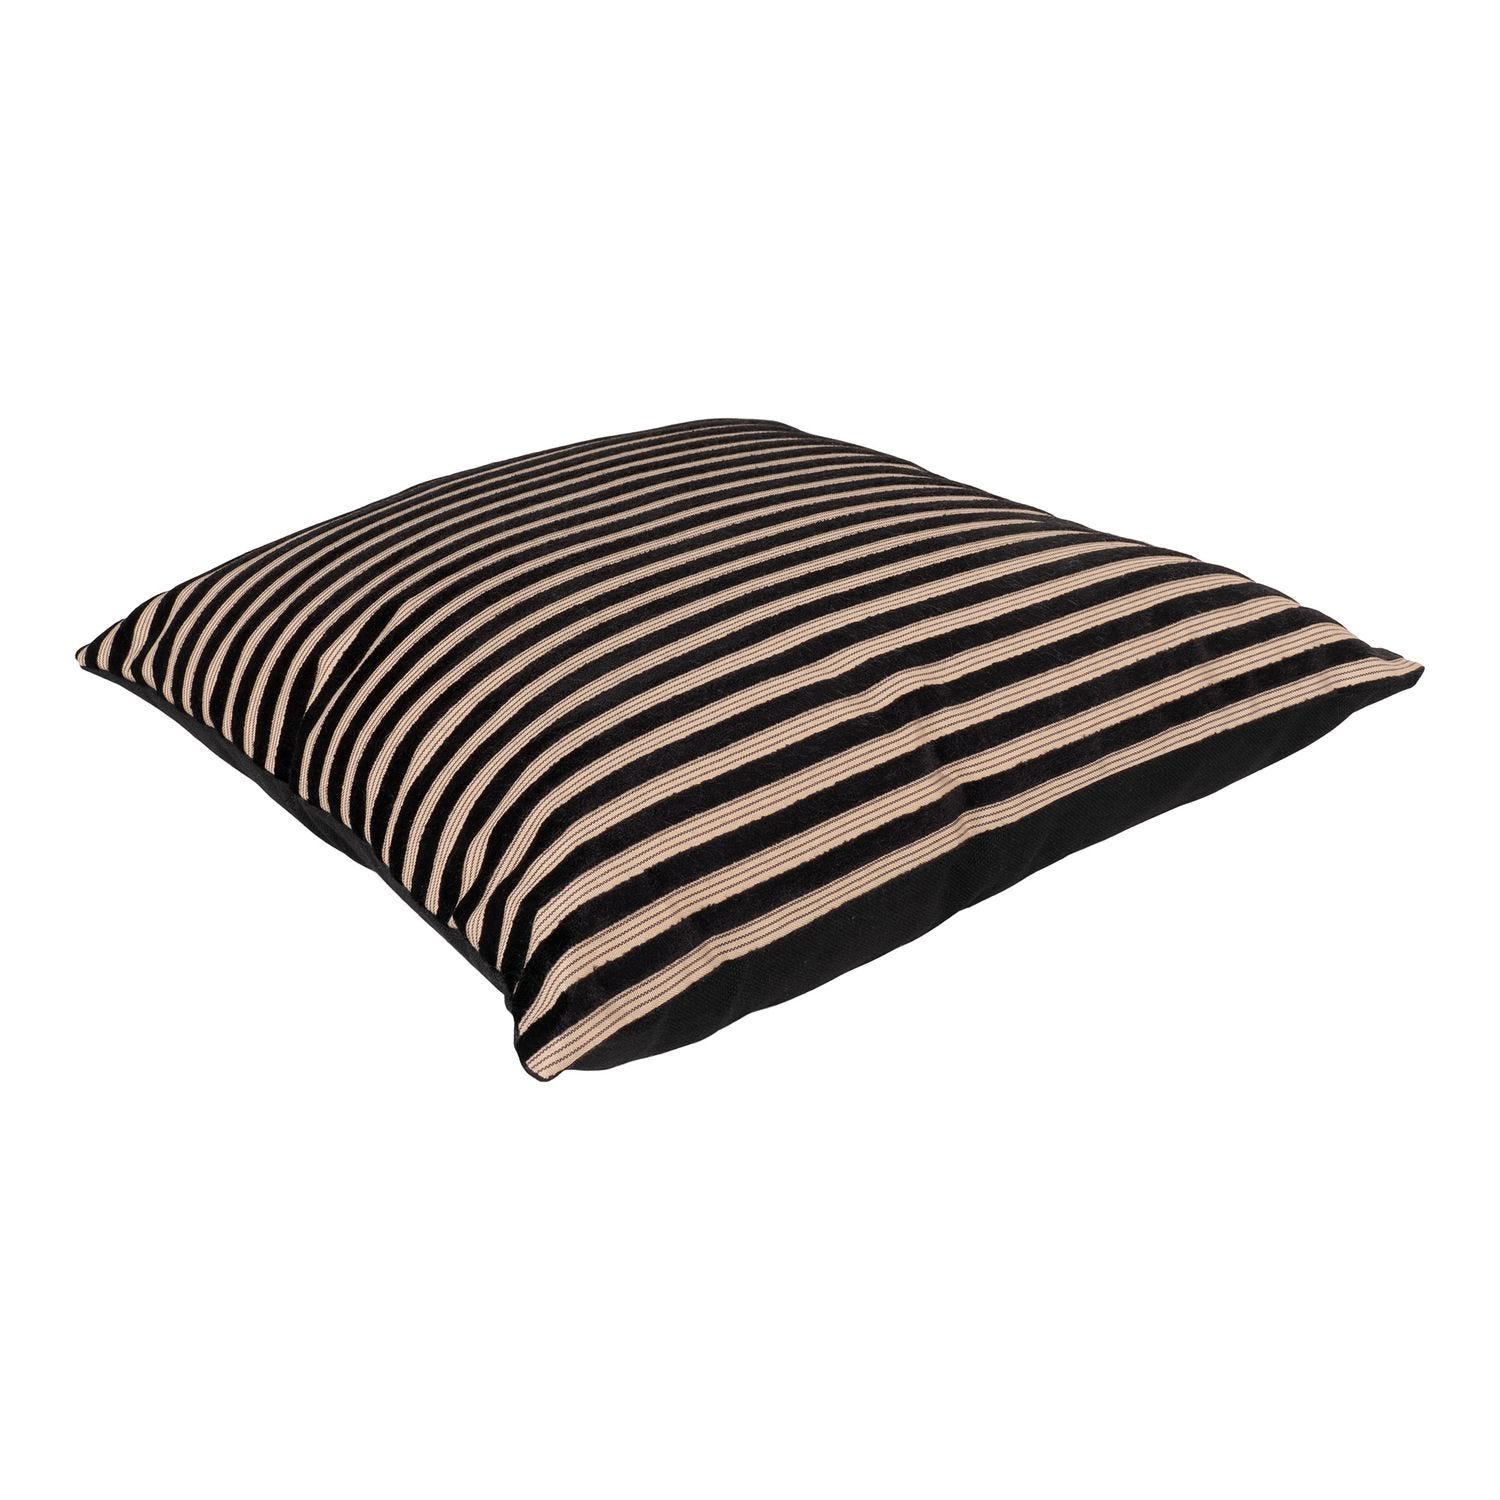 Cuscino rettangolare a strisce nere e beige 30 x 60 cm